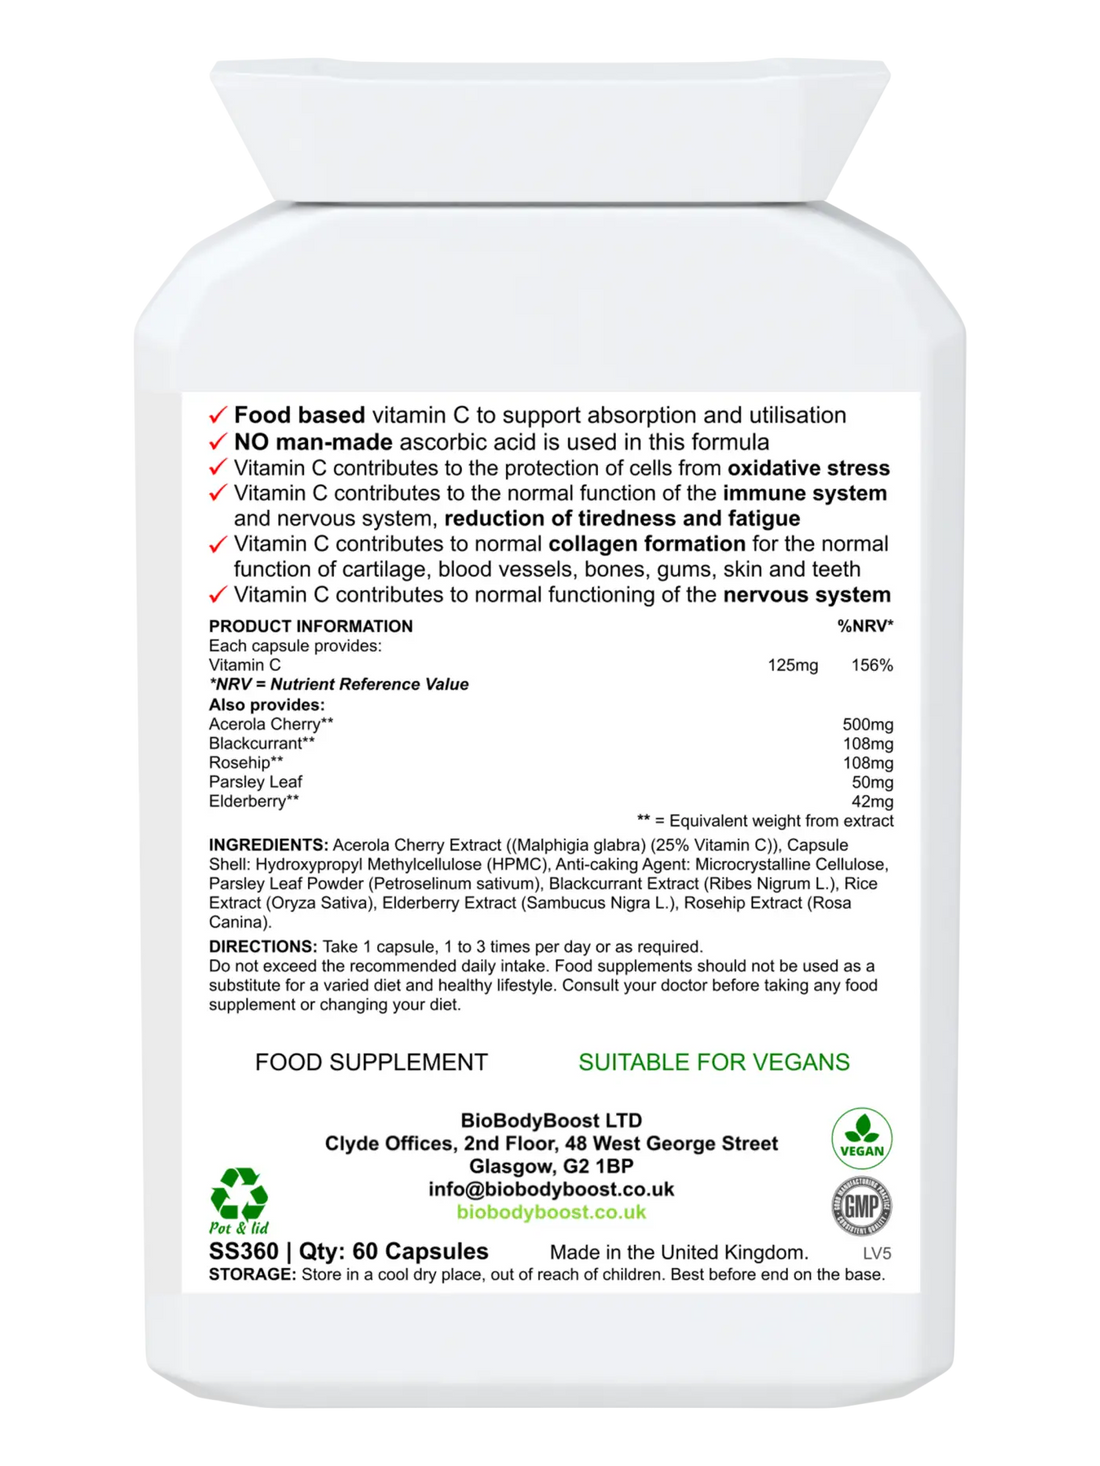 Bio - C Non - acidic Food Form Vitamin C - Vitamins & Supplements acerola